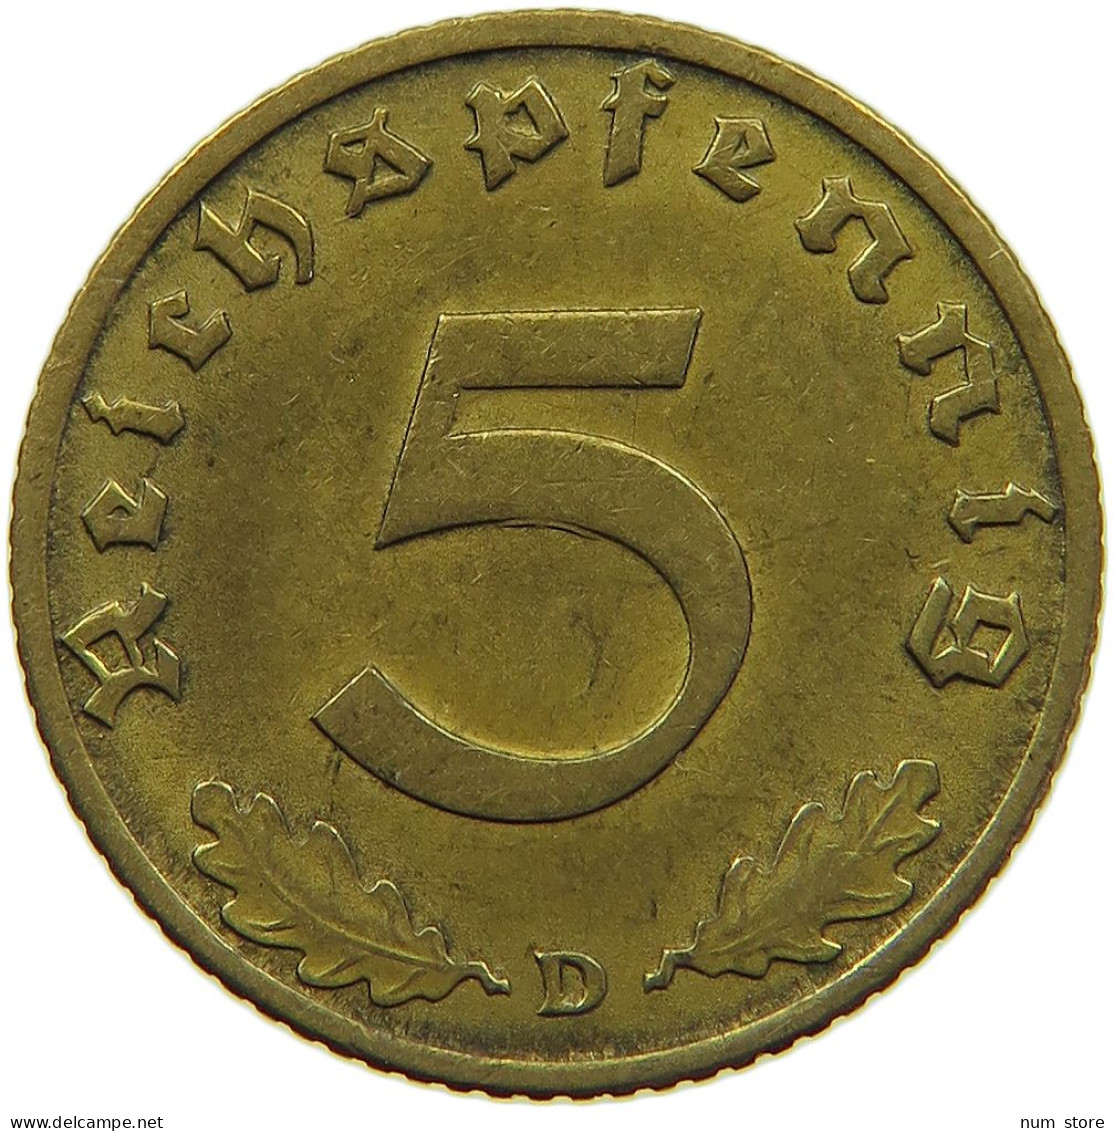 GERMANY 5 REICHSPFENNIG 1938 D #s091 0697 - 5 Reichspfennig